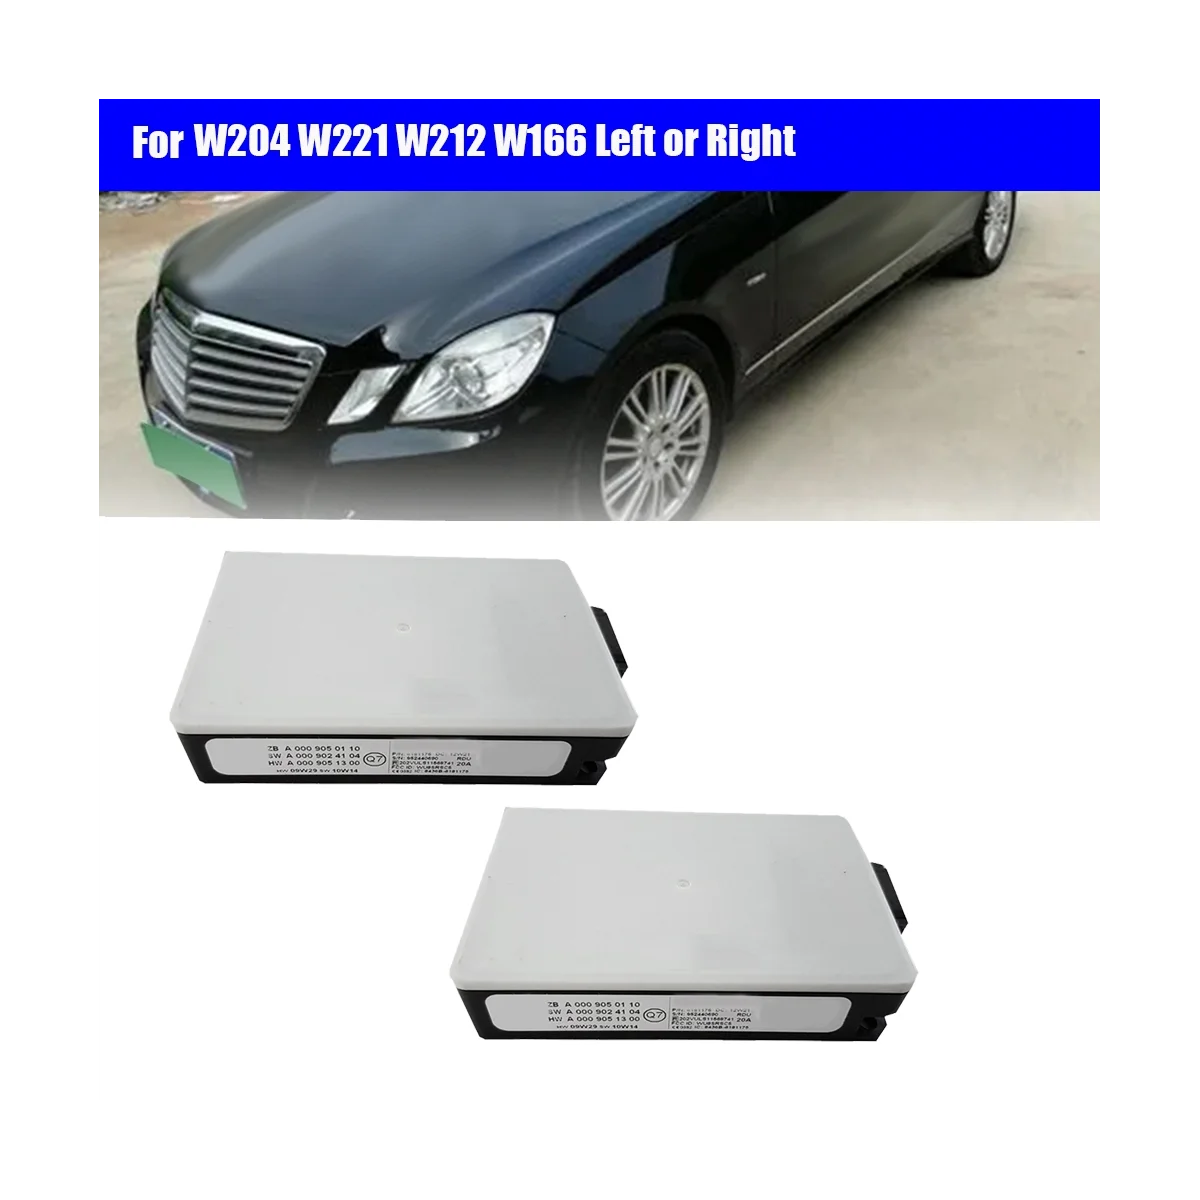 

Автомобильный датчик радара A0009050110, лампа с дальностью действия слепой зоны, для Mercedes-Benz W204, W221, W212, W166, левая или правая, 2 шт.